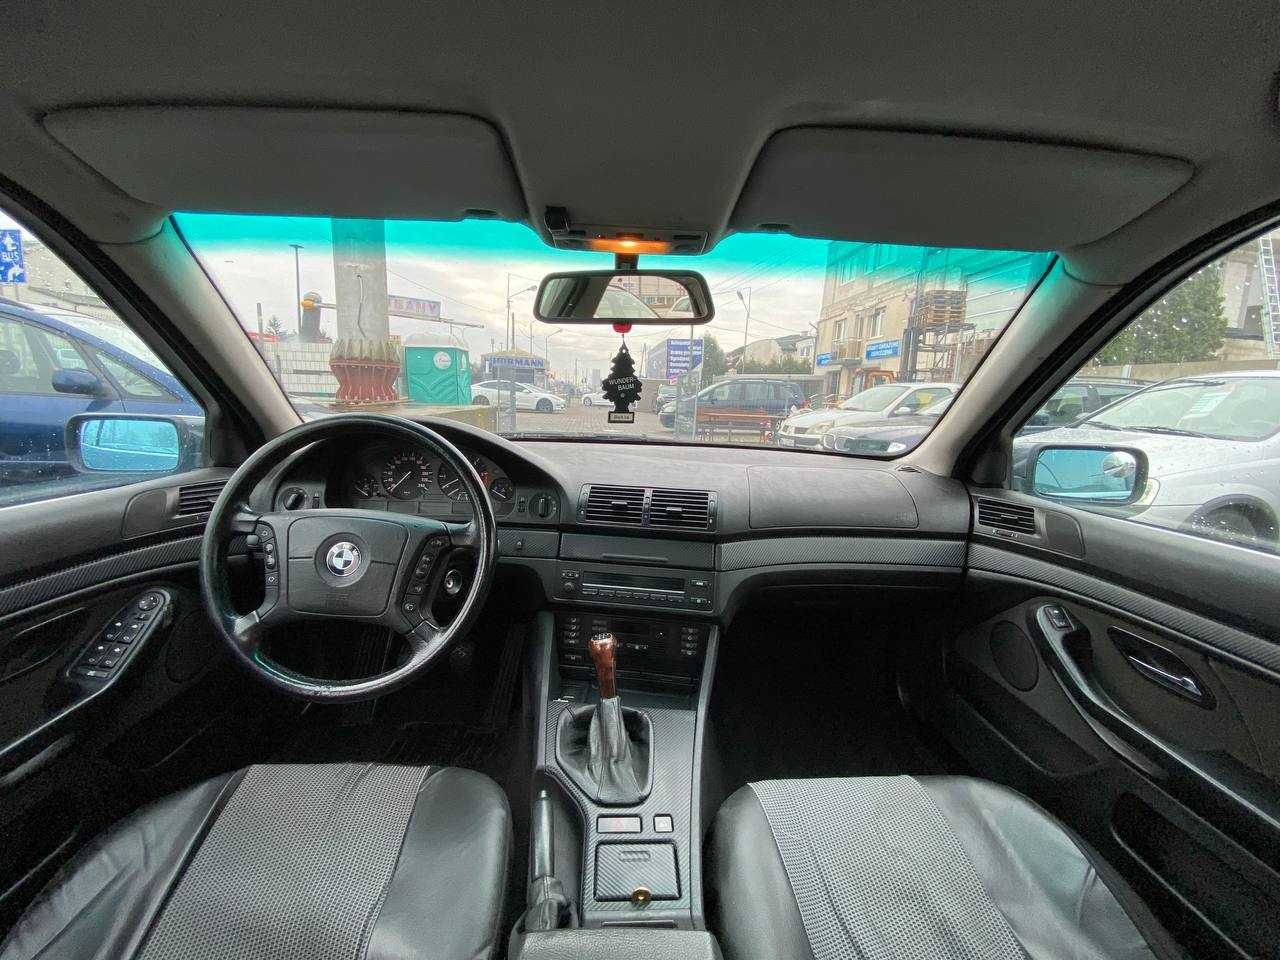 Na Sprzedaż BMW E39 2.5 Diesel/alusy/dobry stan